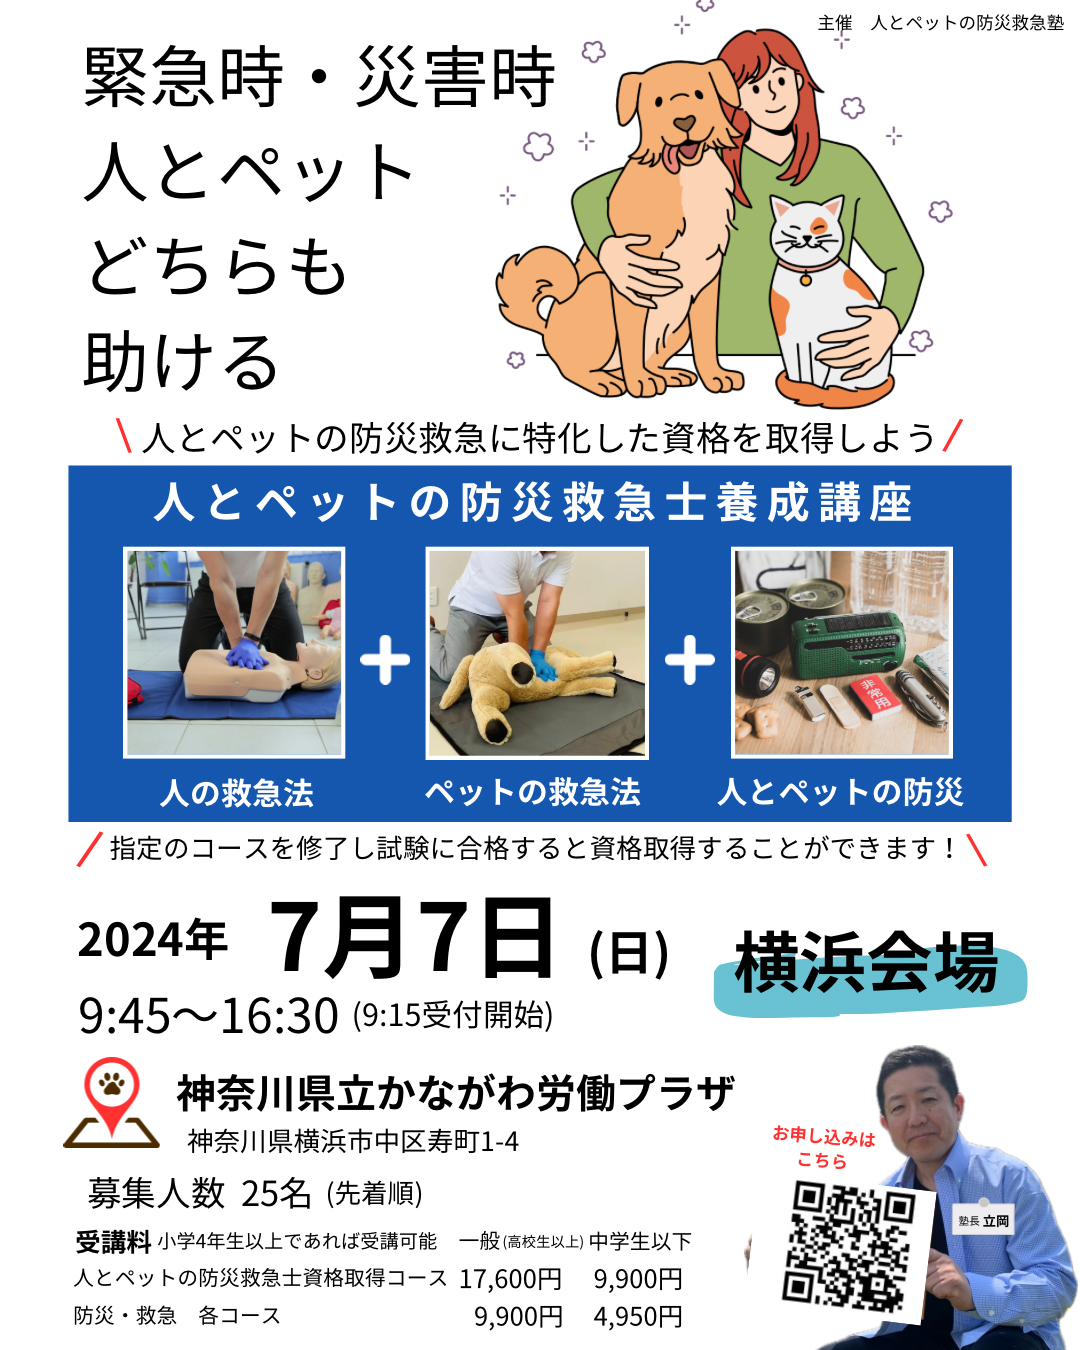 人とペットの防災救急士資格取得講習会(横浜会場)